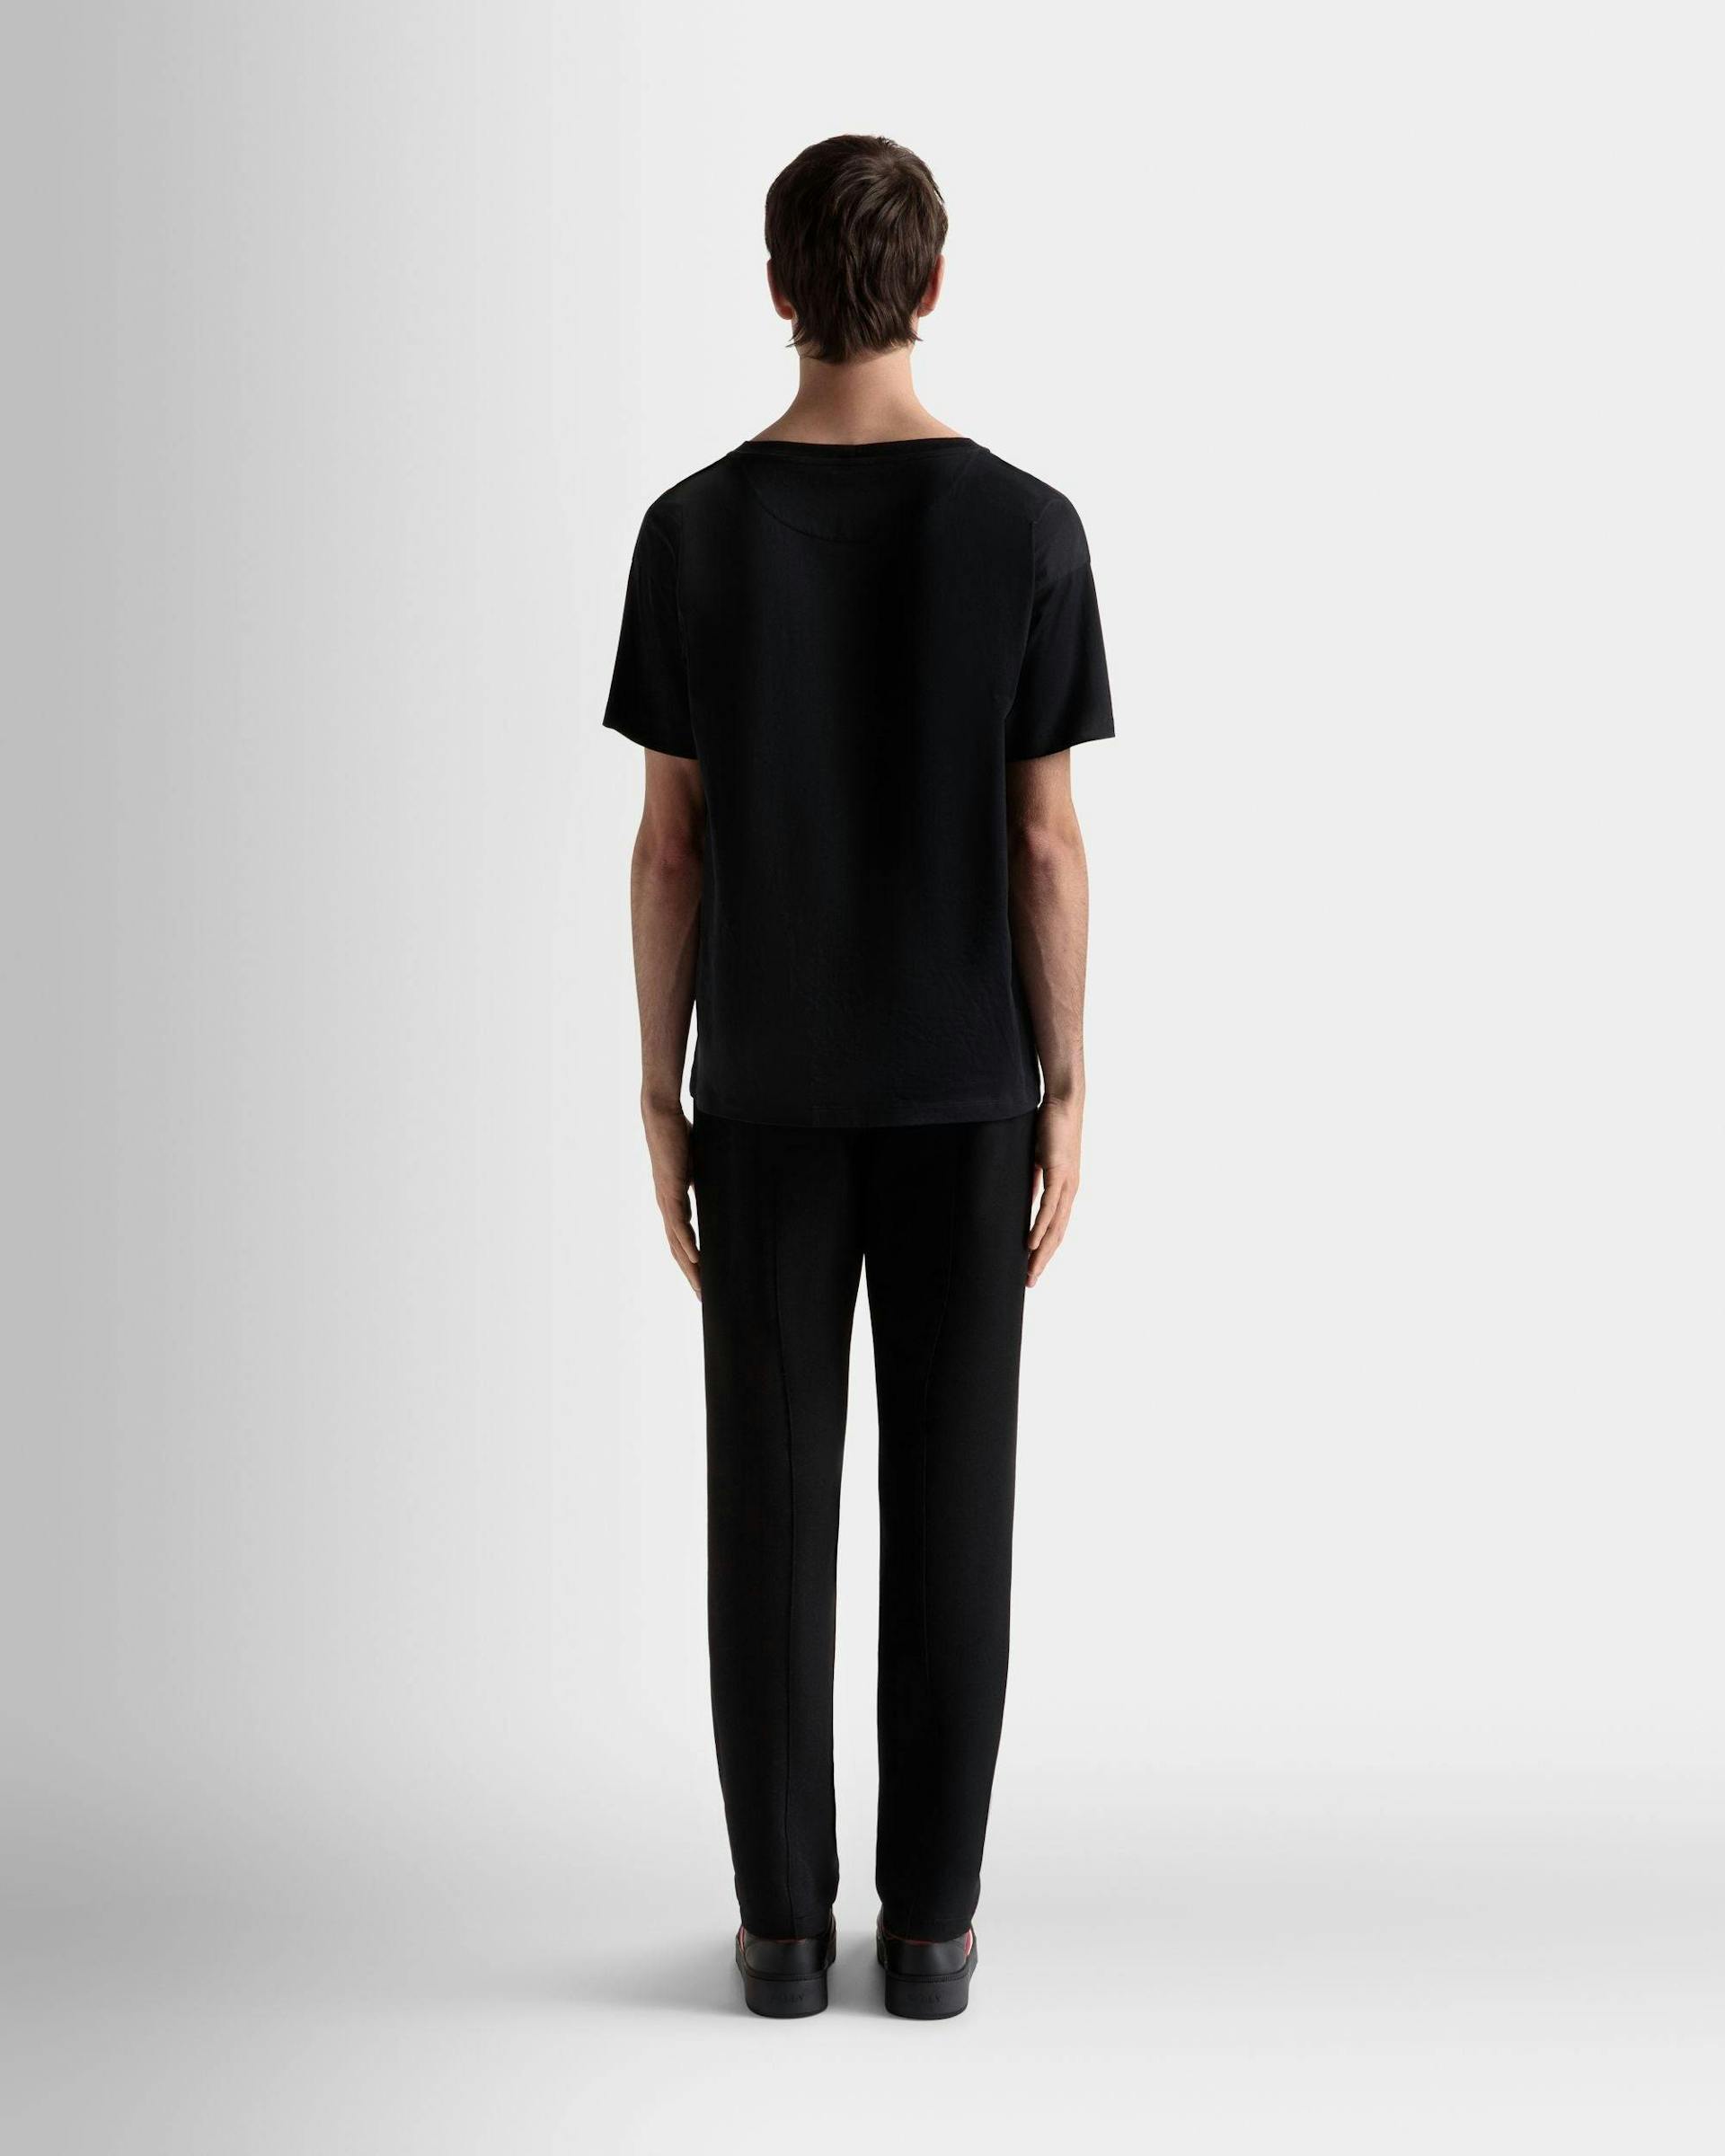 Men's T-Shirt In Black Cotton | Bally | On Model Back